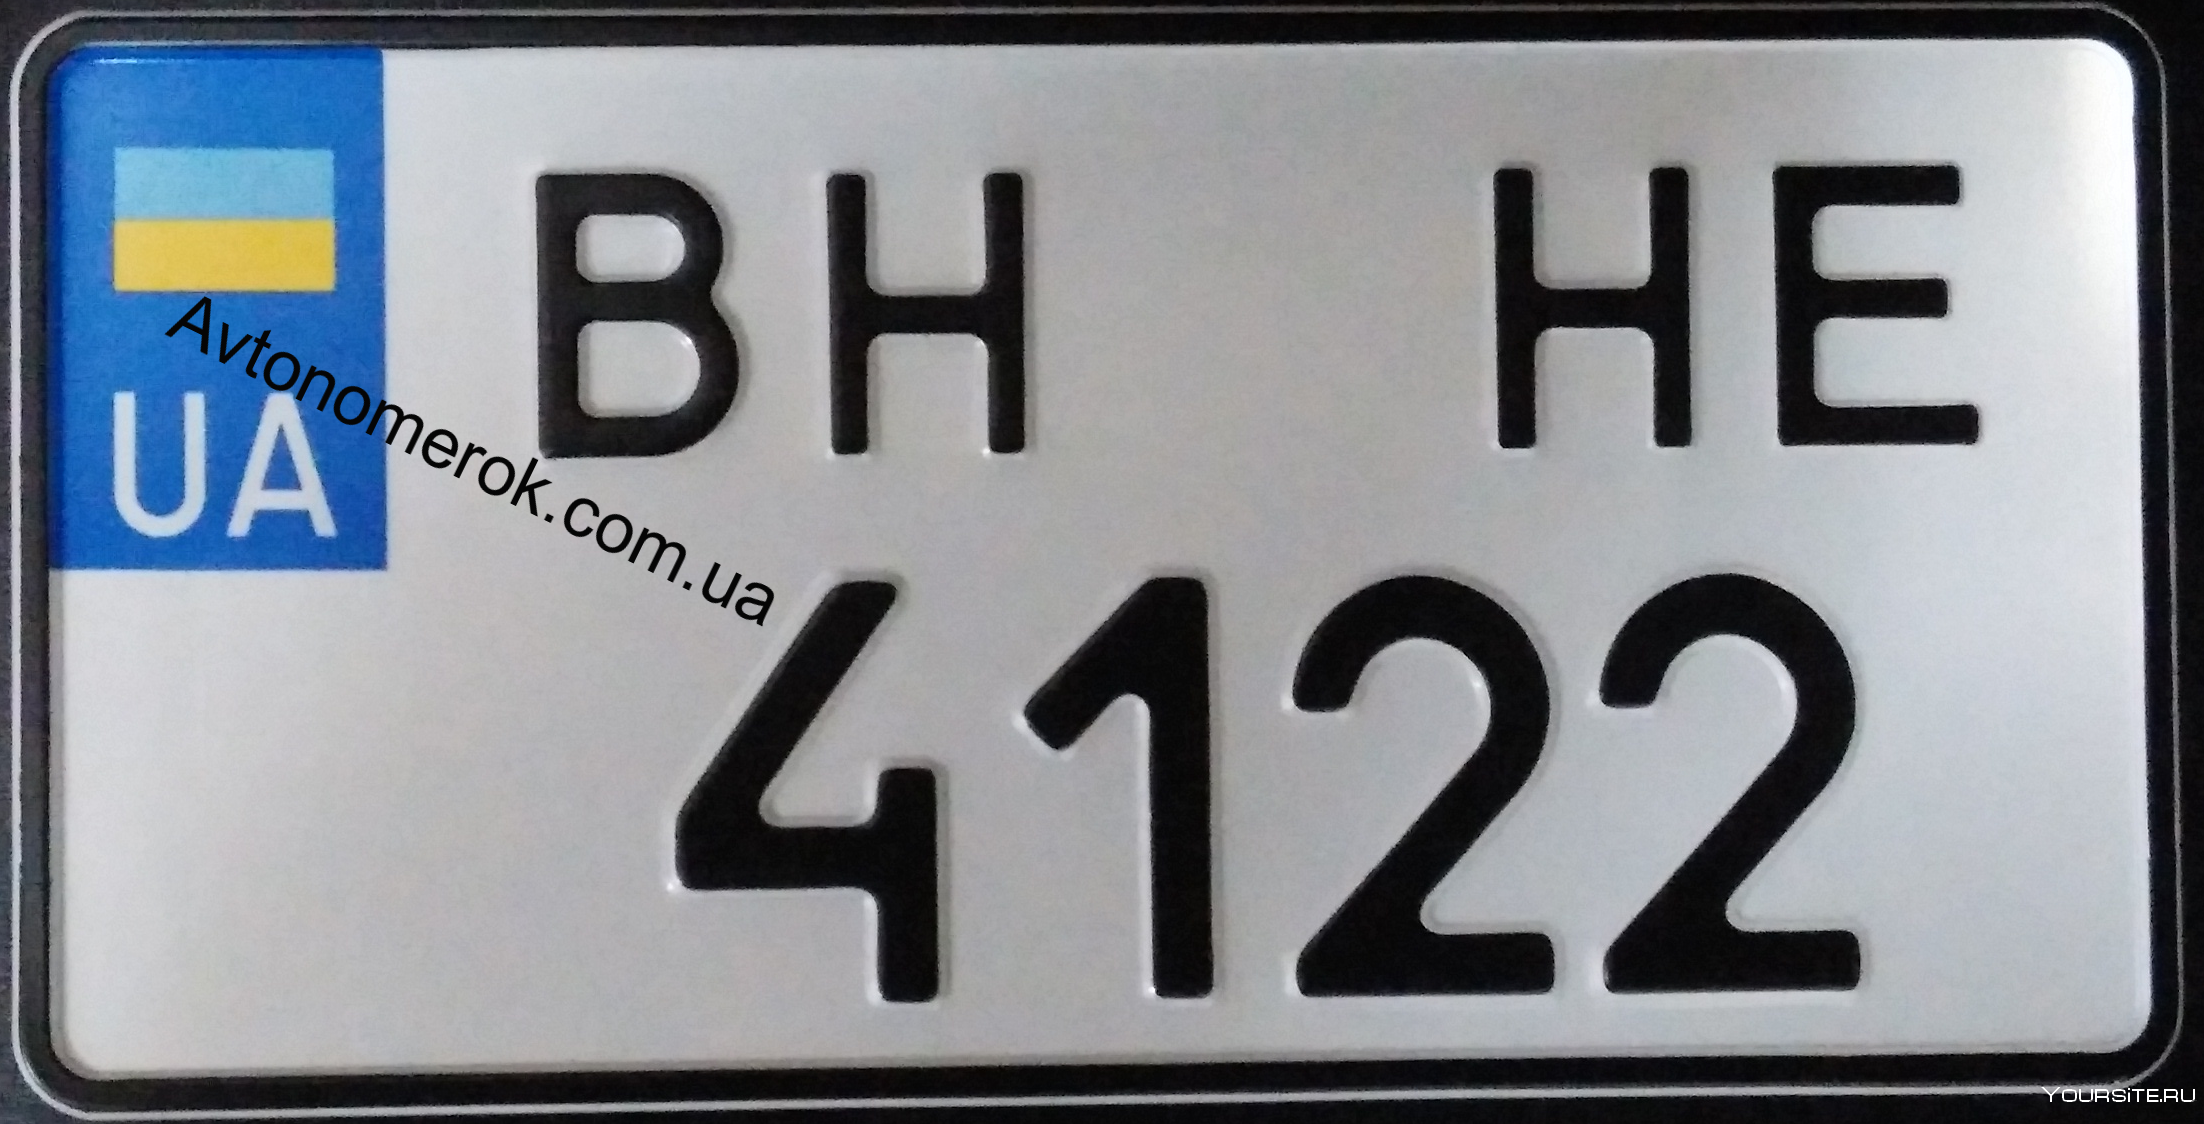 Номера ввв. Квадратные номера на американские машины. Украинские номера квадратные. Украинские номера авто квадратные. Германские номера на авто квадратные.